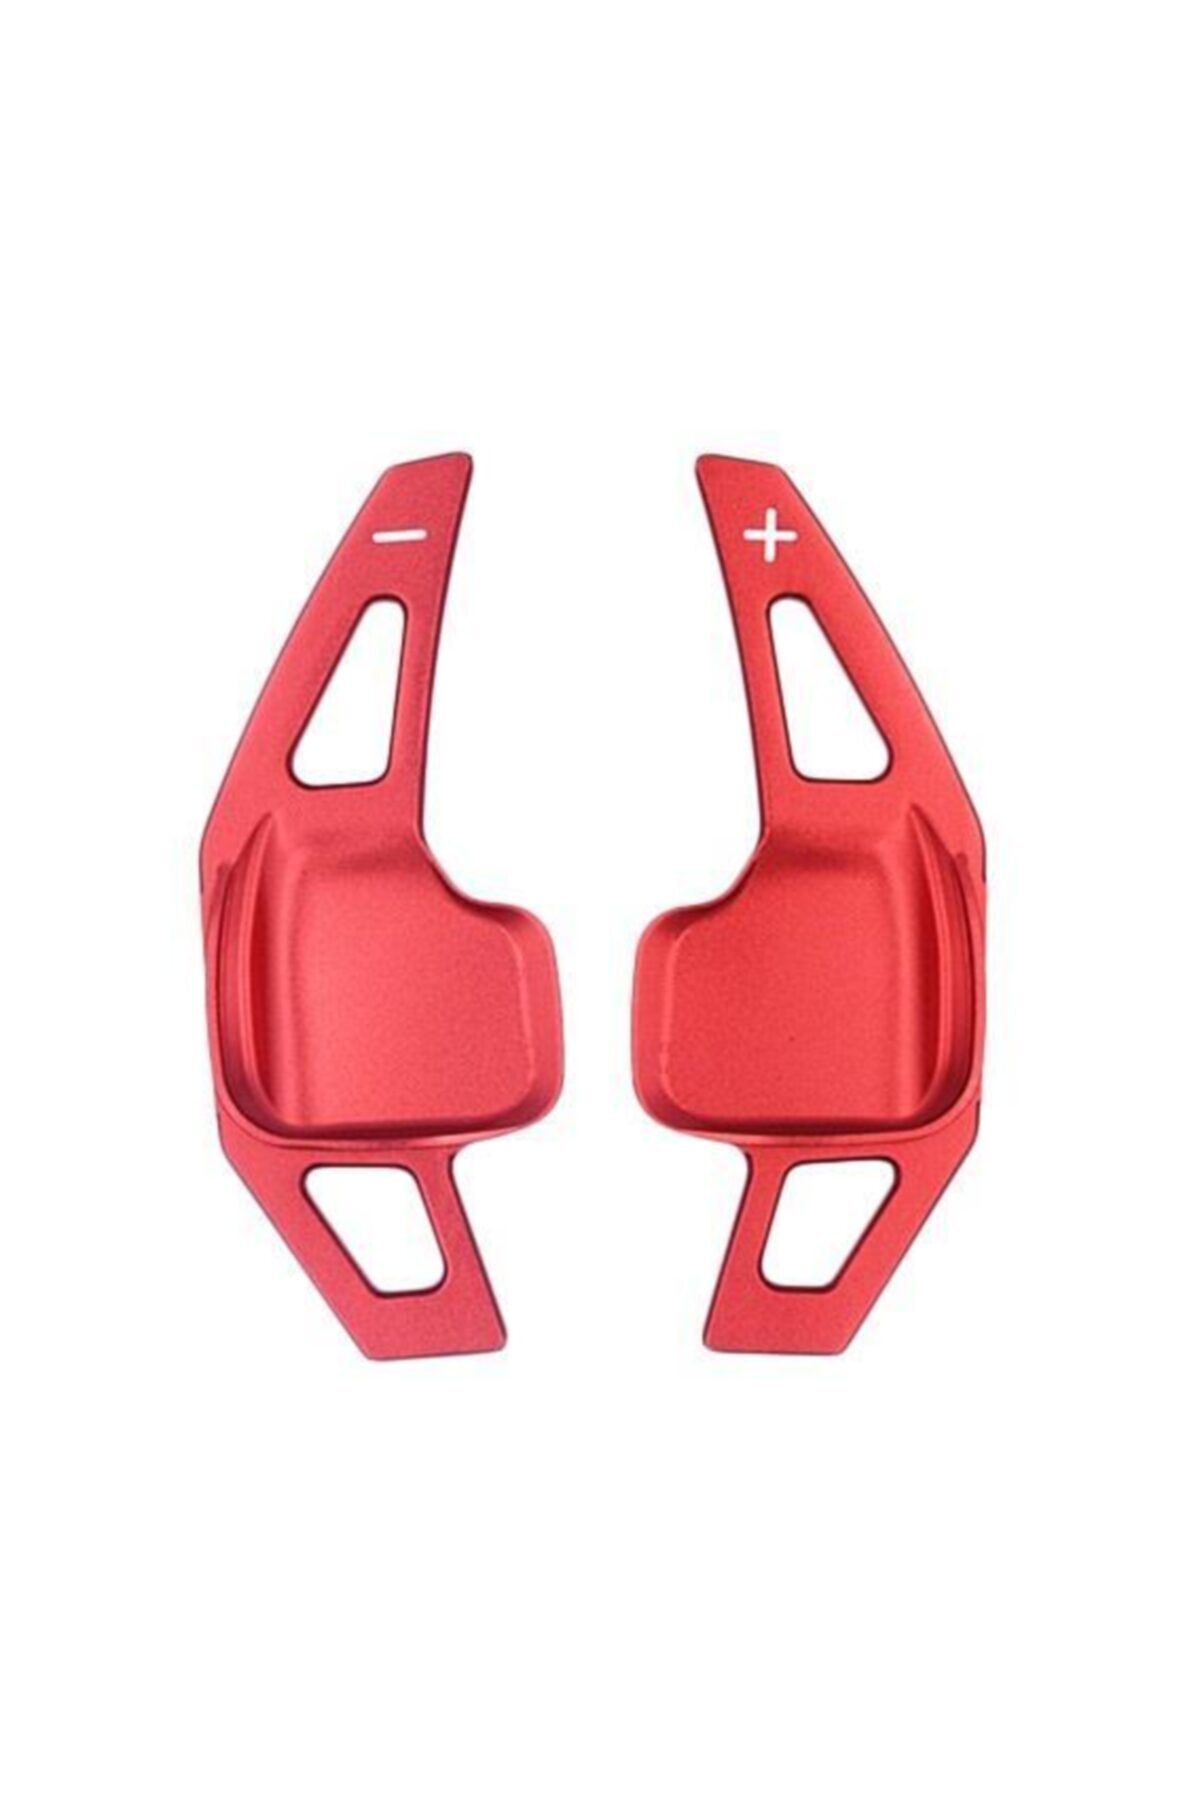 OLED GARAJ Bmw 3, 4, 5 Serisi İçin Uyumlu Kulakçık Pedal Shıft Paddle Shift F1 Kırmızı